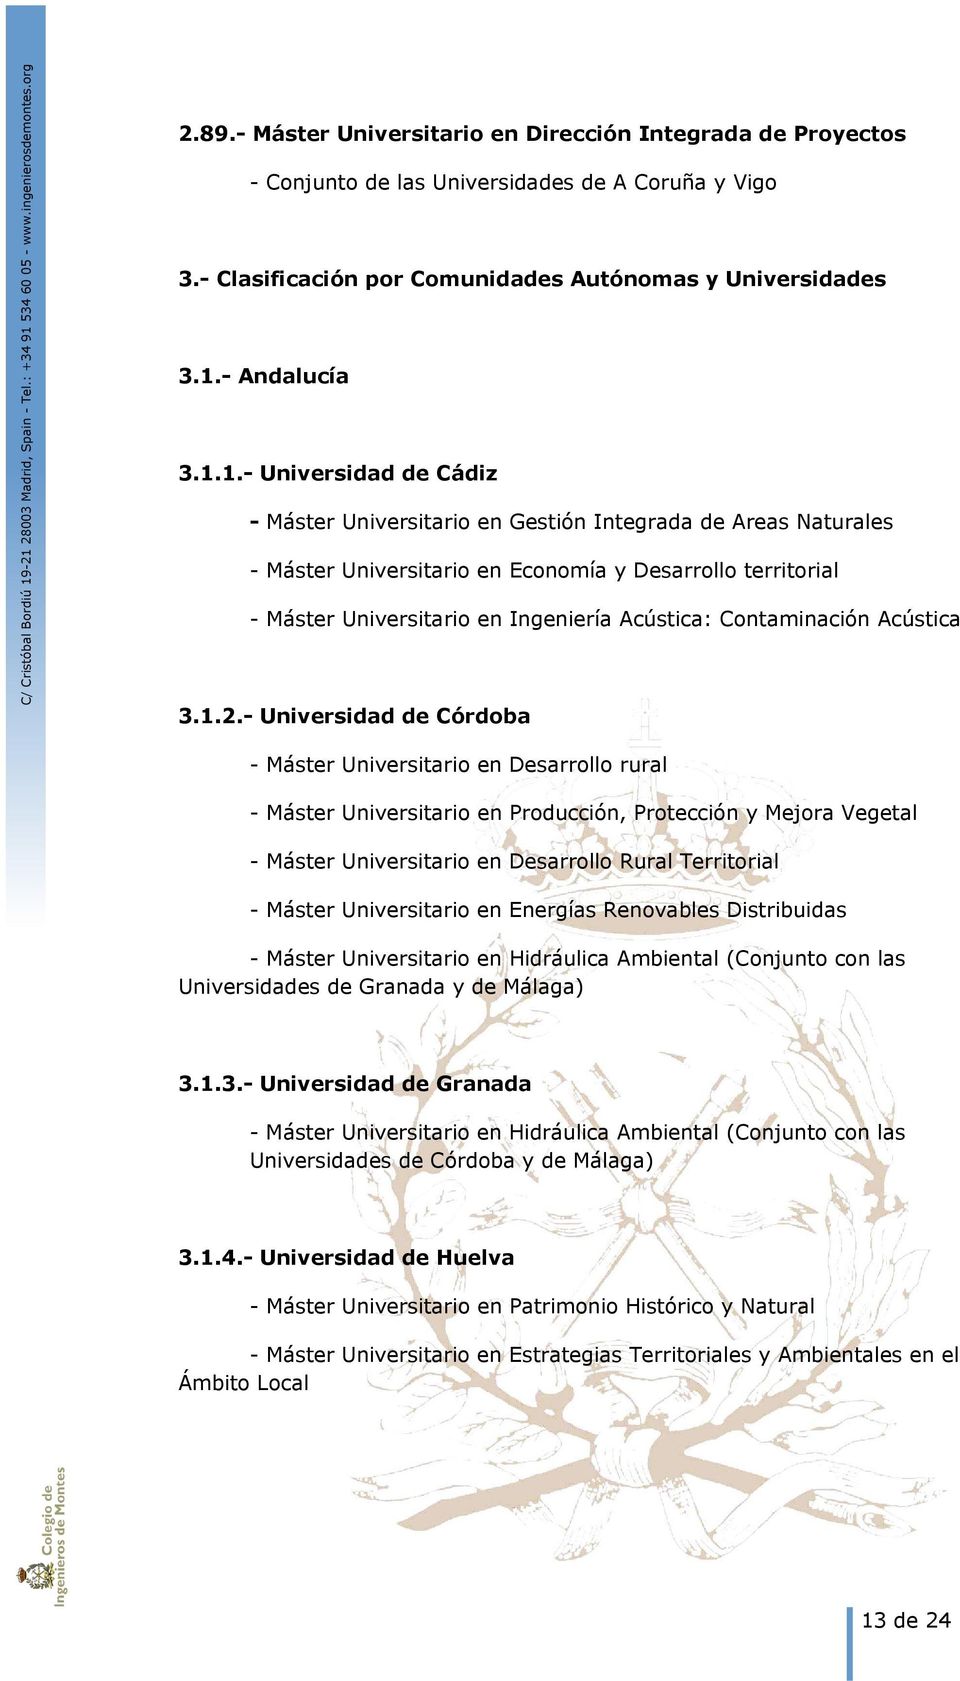 1.- Universidad de Cádiz - Máster Universitario en Gestión Integrada de Areas Naturales - Máster Universitario en Economía y Desarrollo territorial - Máster Universitario en Ingeniería Acústica: